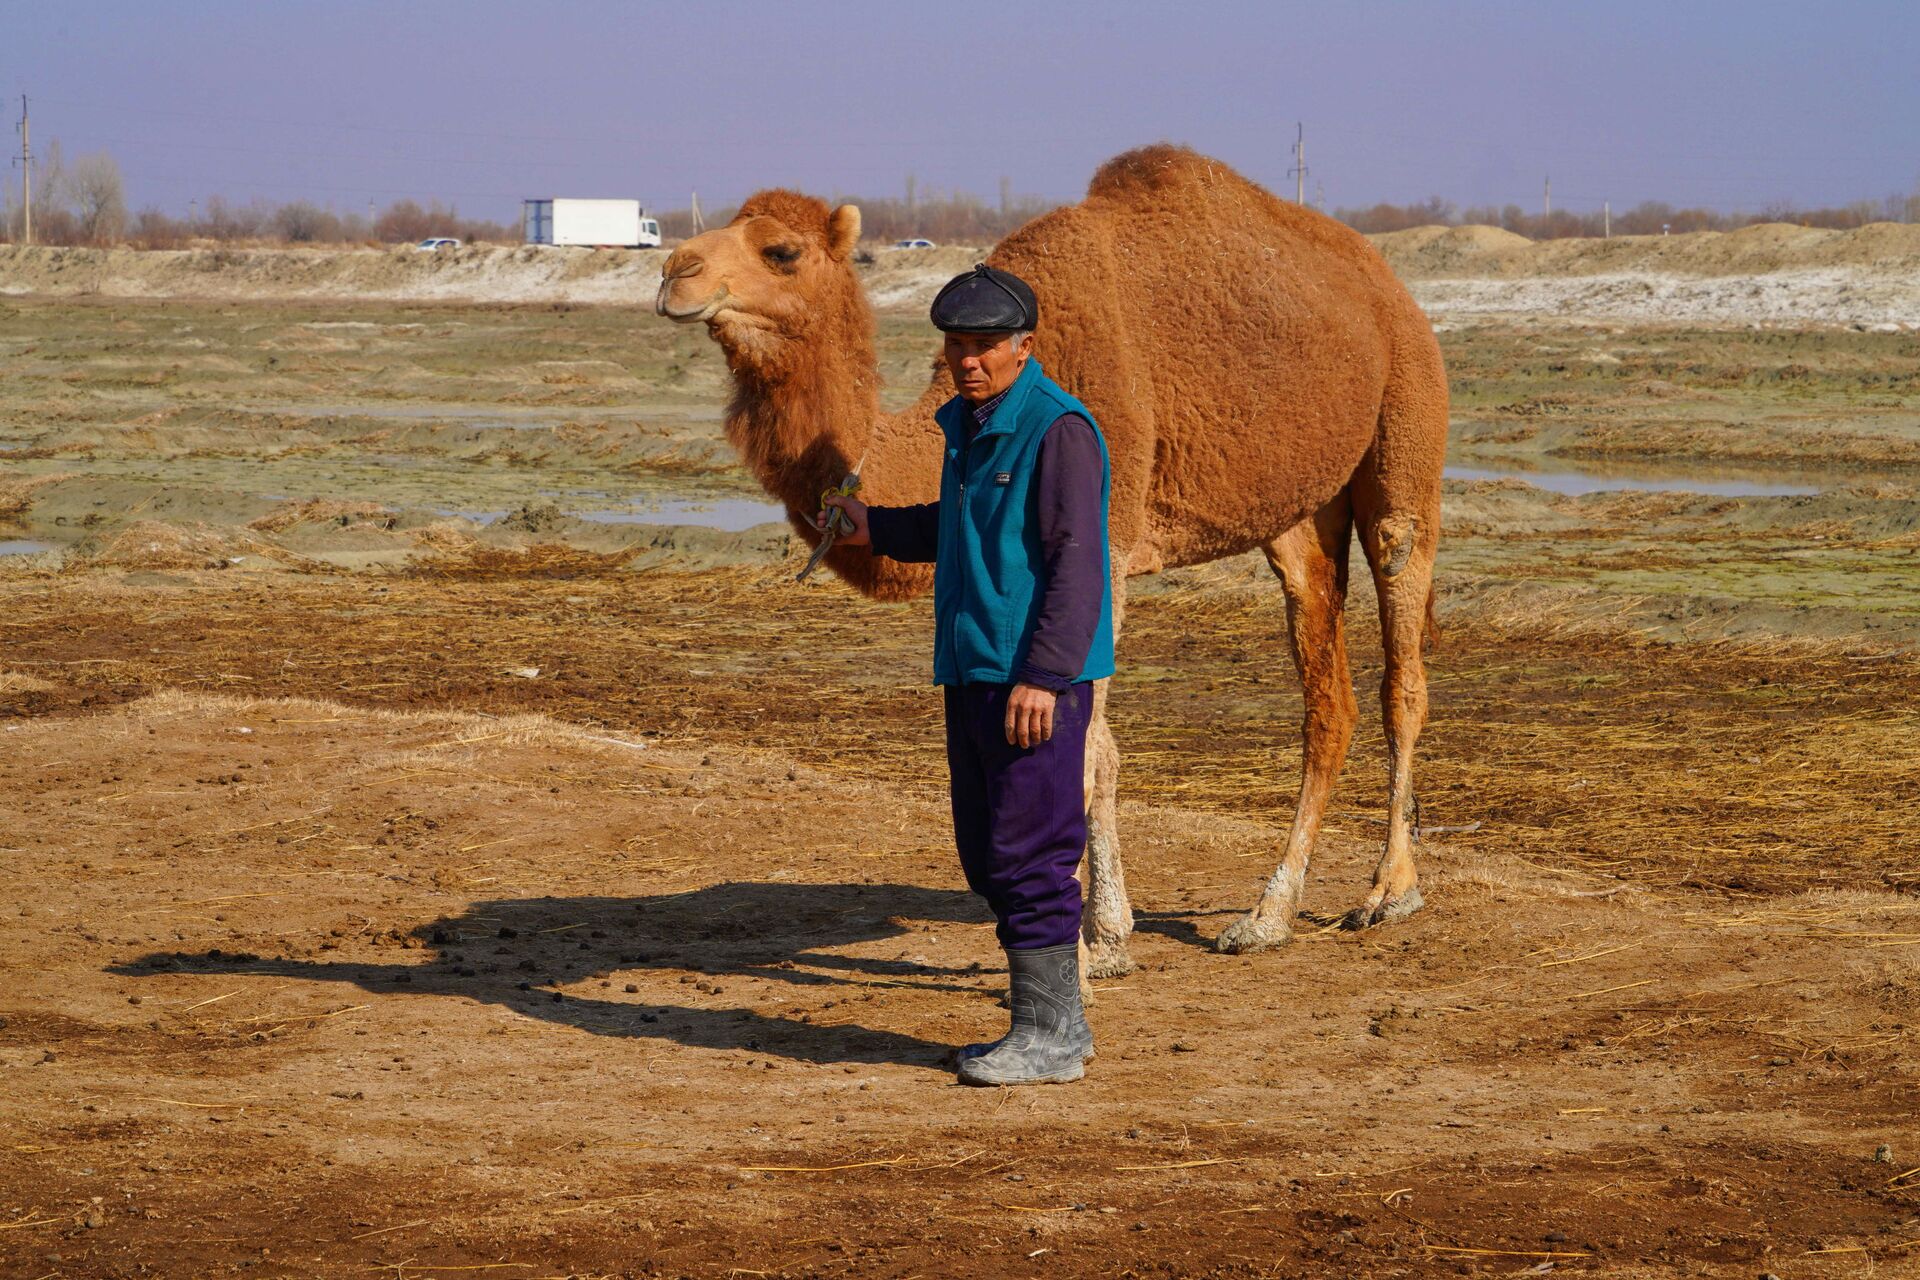 Верблюжья ферма в Риштанском районе Ферганской долины  - Sputnik Узбекистан, 1920, 09.03.2021